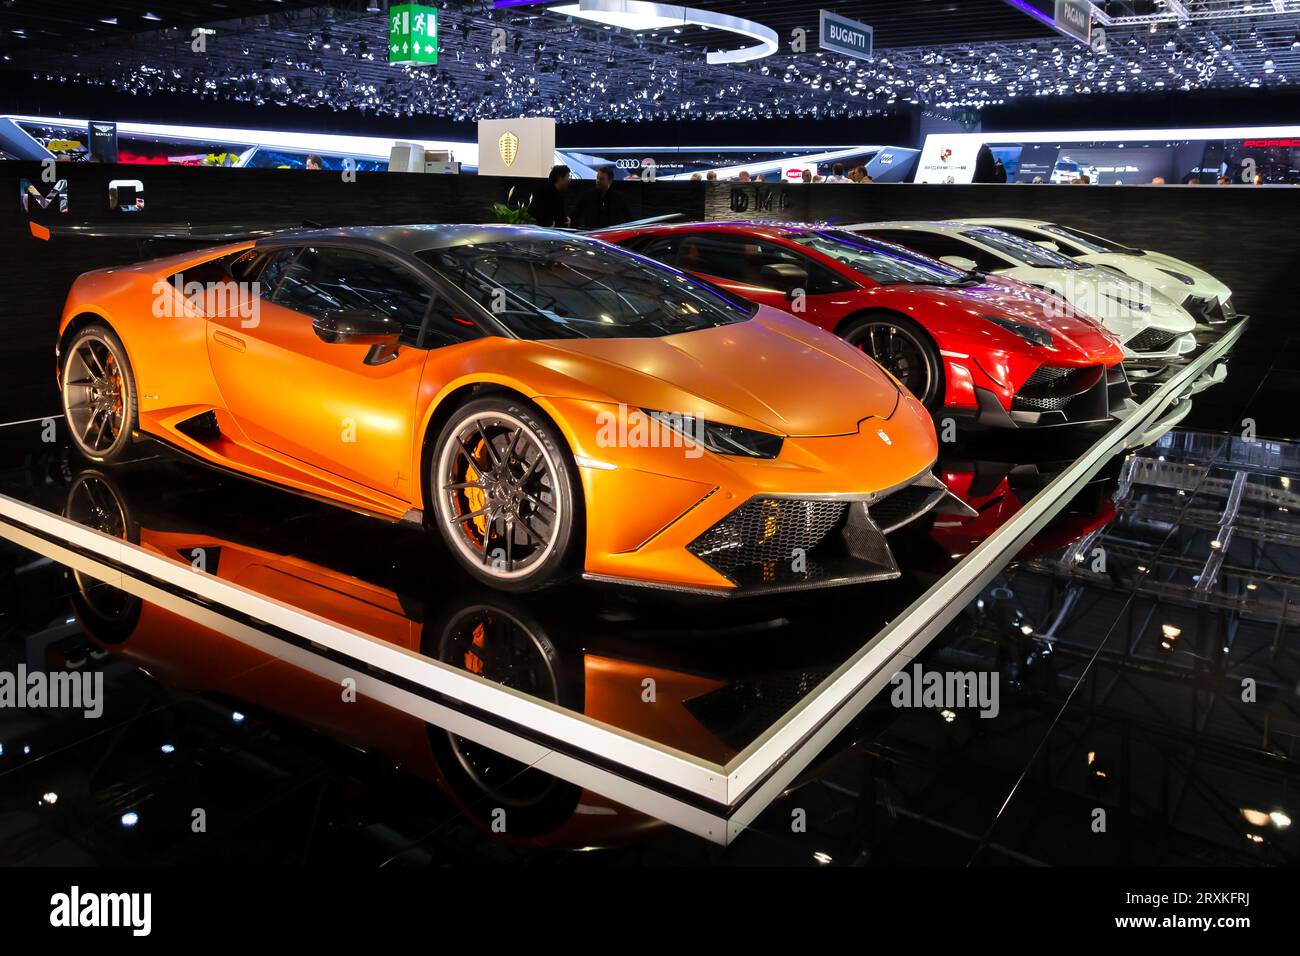 Supercars Lamborghini personnalisés de DMC Exotic car Tuning LTD au 85e salon international de l'automobile de Genève à Palexpo, Genève. 4 mars 2015 Banque D'Images